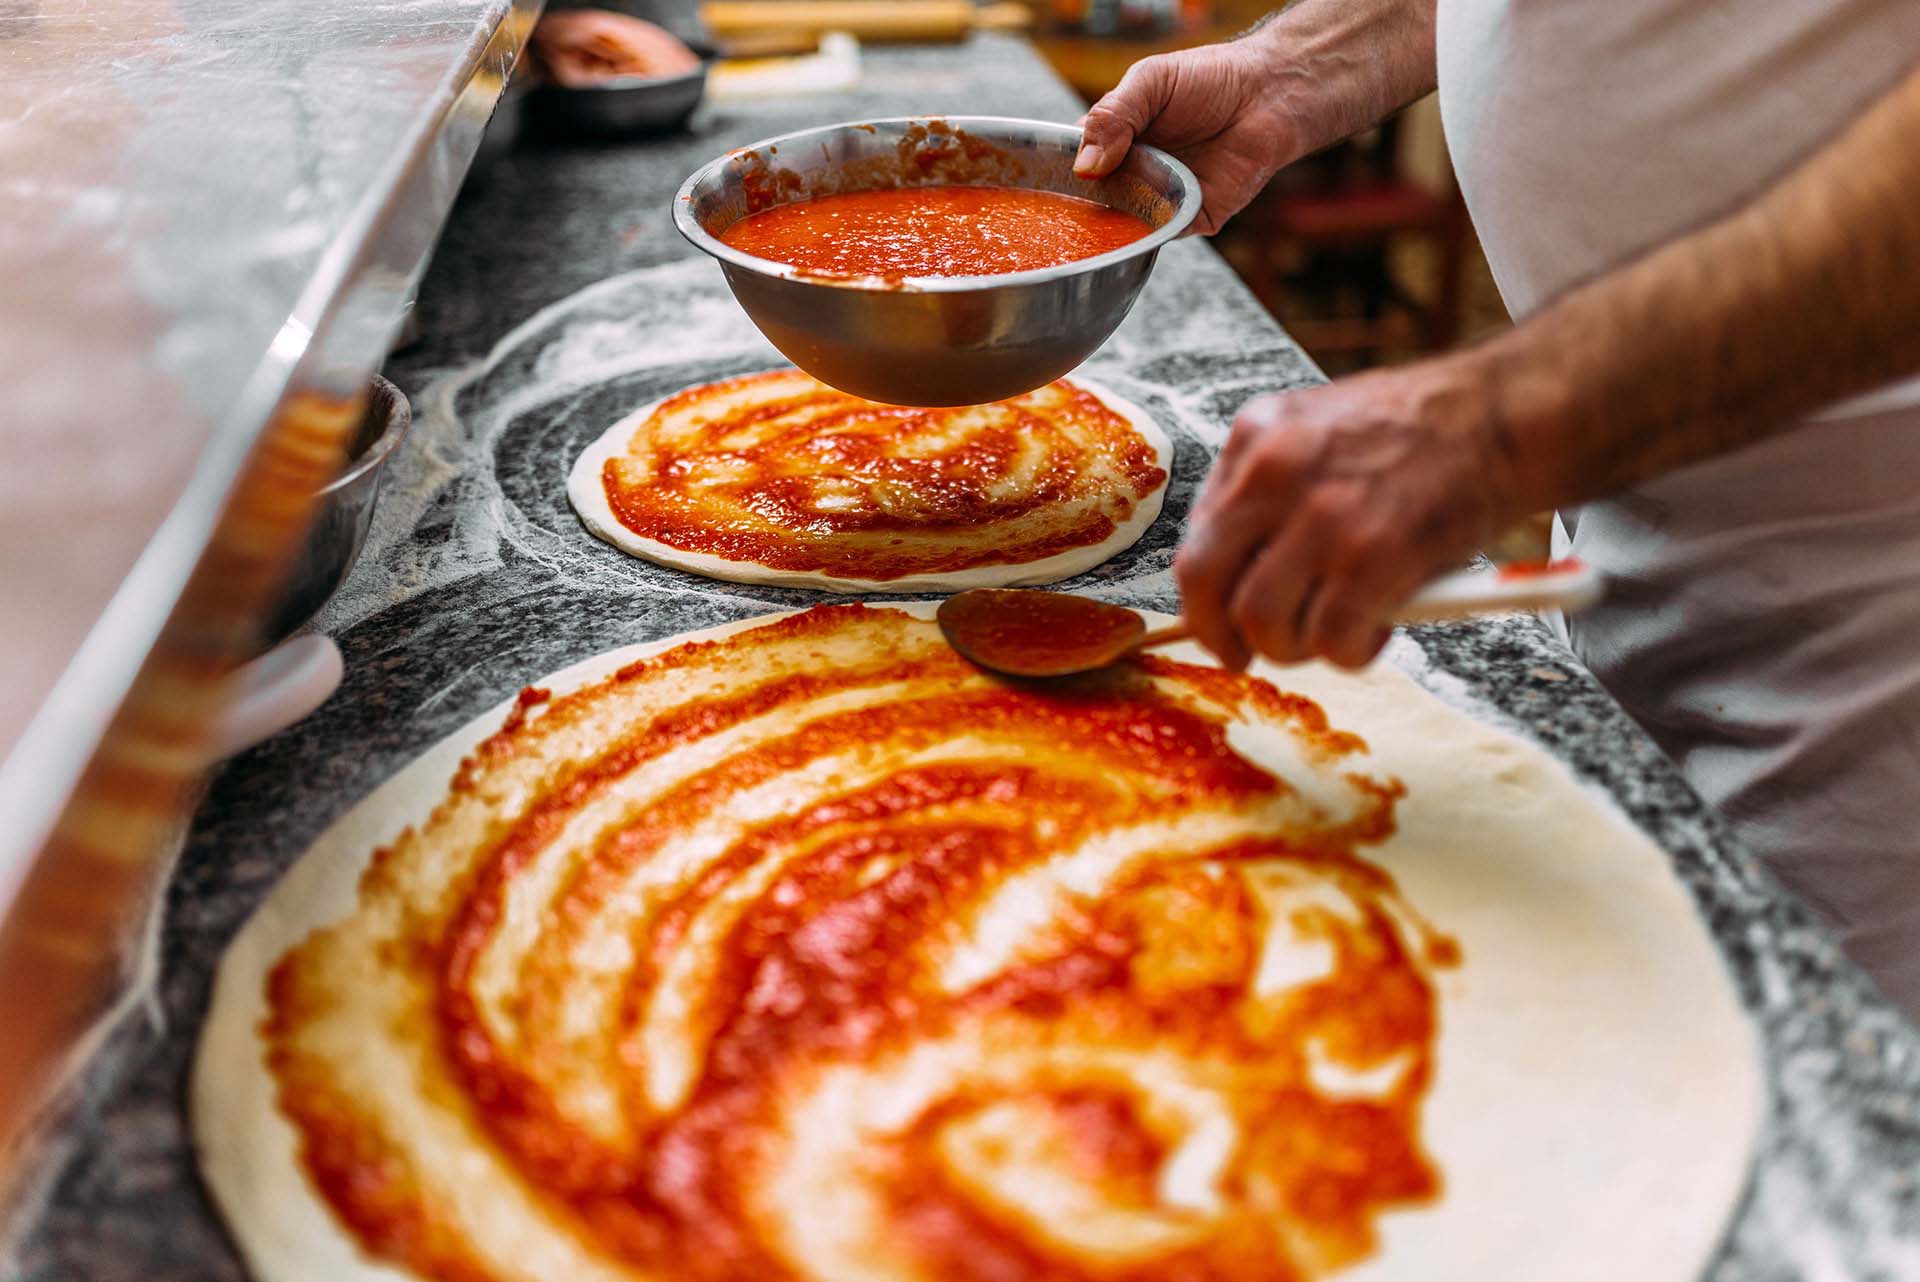 Pizzateig wird mit Tomatensauce bestrichen